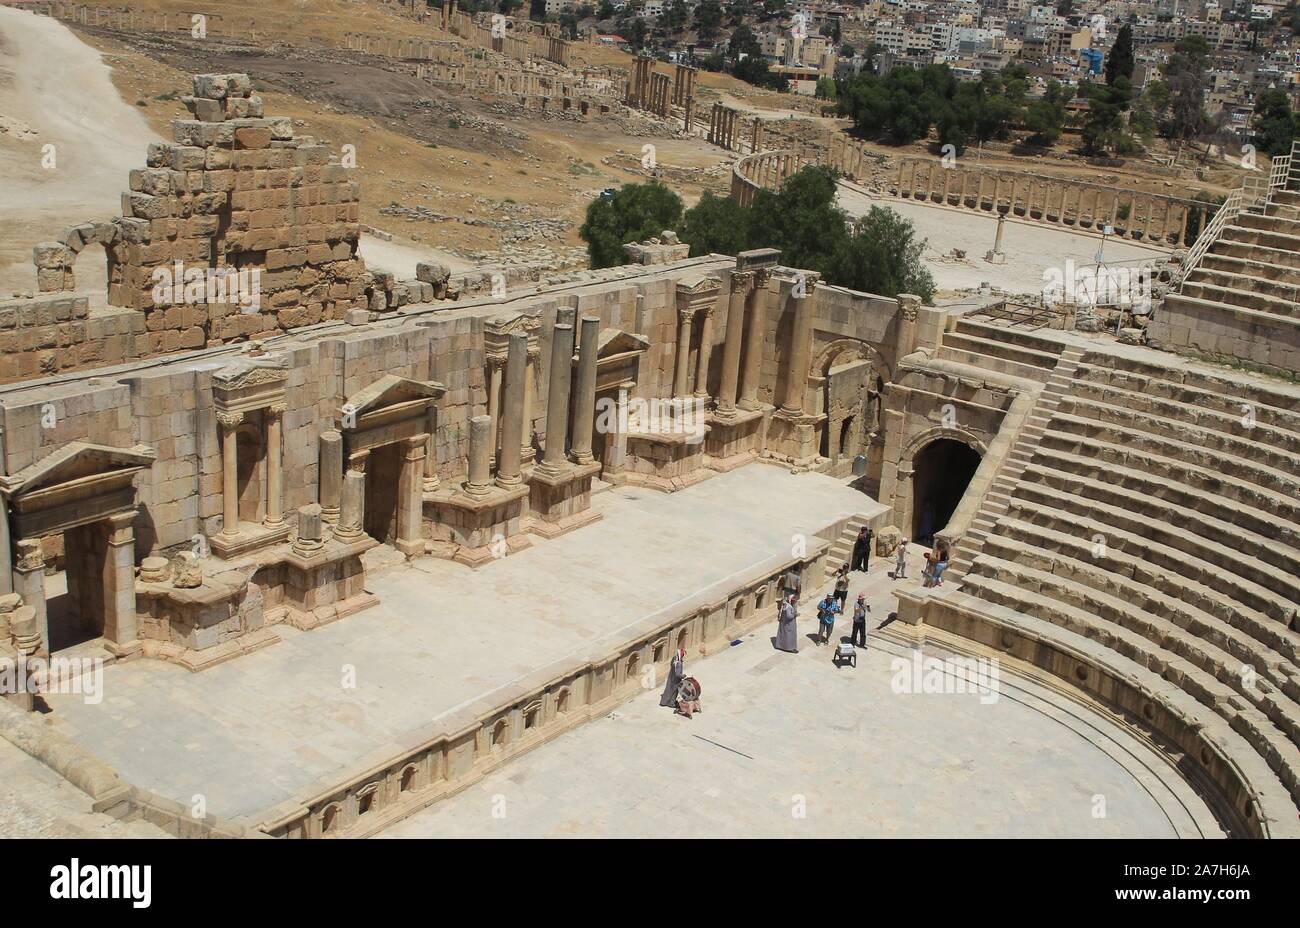 JORDANIA. JERASH AMMAN. Jerash , es el sitio de las ruinas de la ciudad grecorromana de Gerasa, también conocida como Antioquía en el Río Dorado. Jerash es considerada una de las ciudades romanas más importantes y mejor conservadas del Cercano Oriente. Era una ciudad de la Decápolis.. TEATRO CON CAPACIDAD PARA 3000 PERSONAS , EN LA ACTUALIDAD SE CELEBRAN CONCIERTOS POR SU EXCELENTE ACUSTICA. Stock Photo